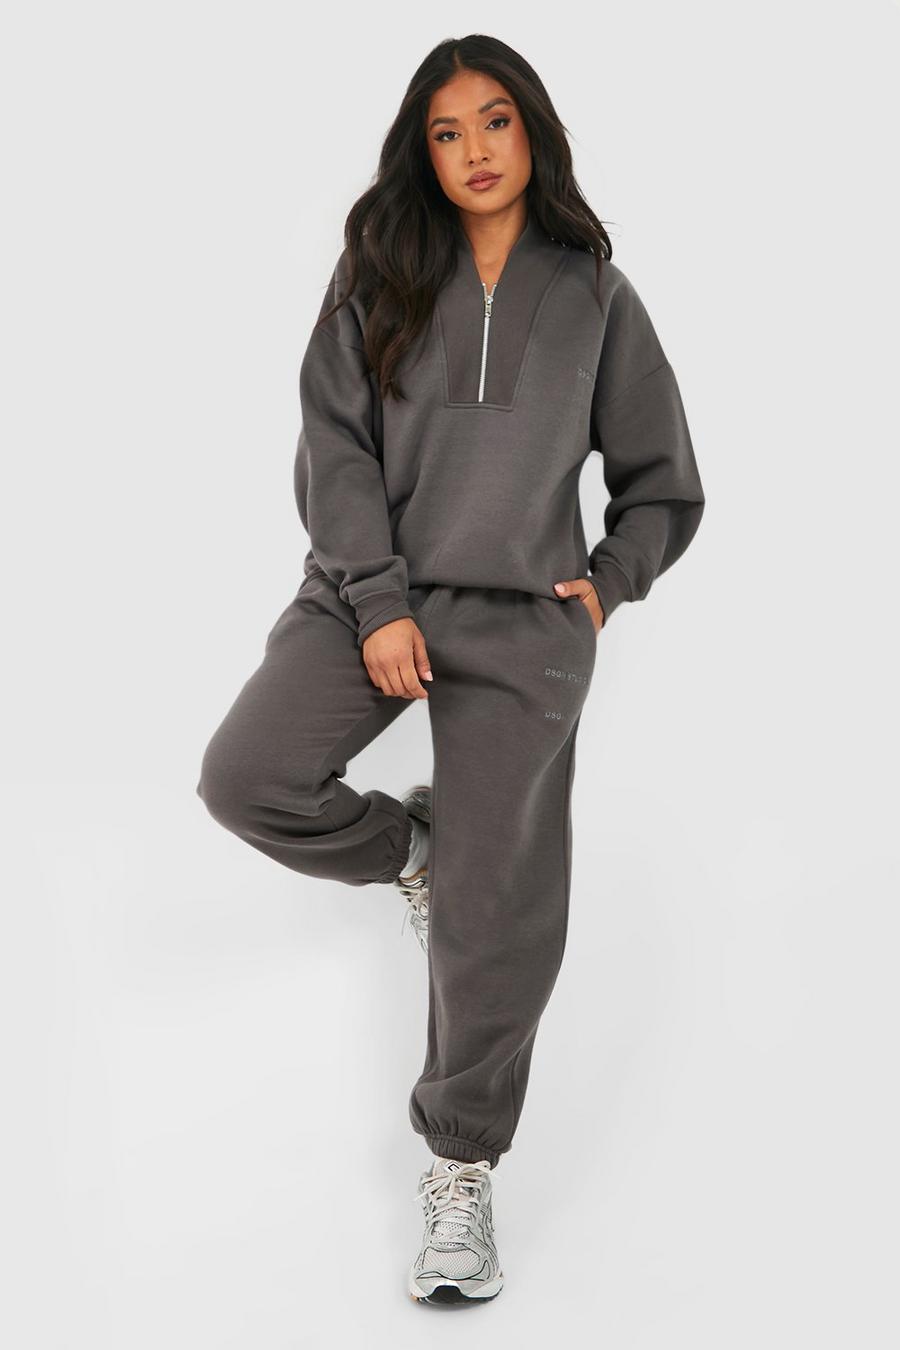 Sweatshirt and Sweatpants Set Women Petite Warm Up Suit Zip Up